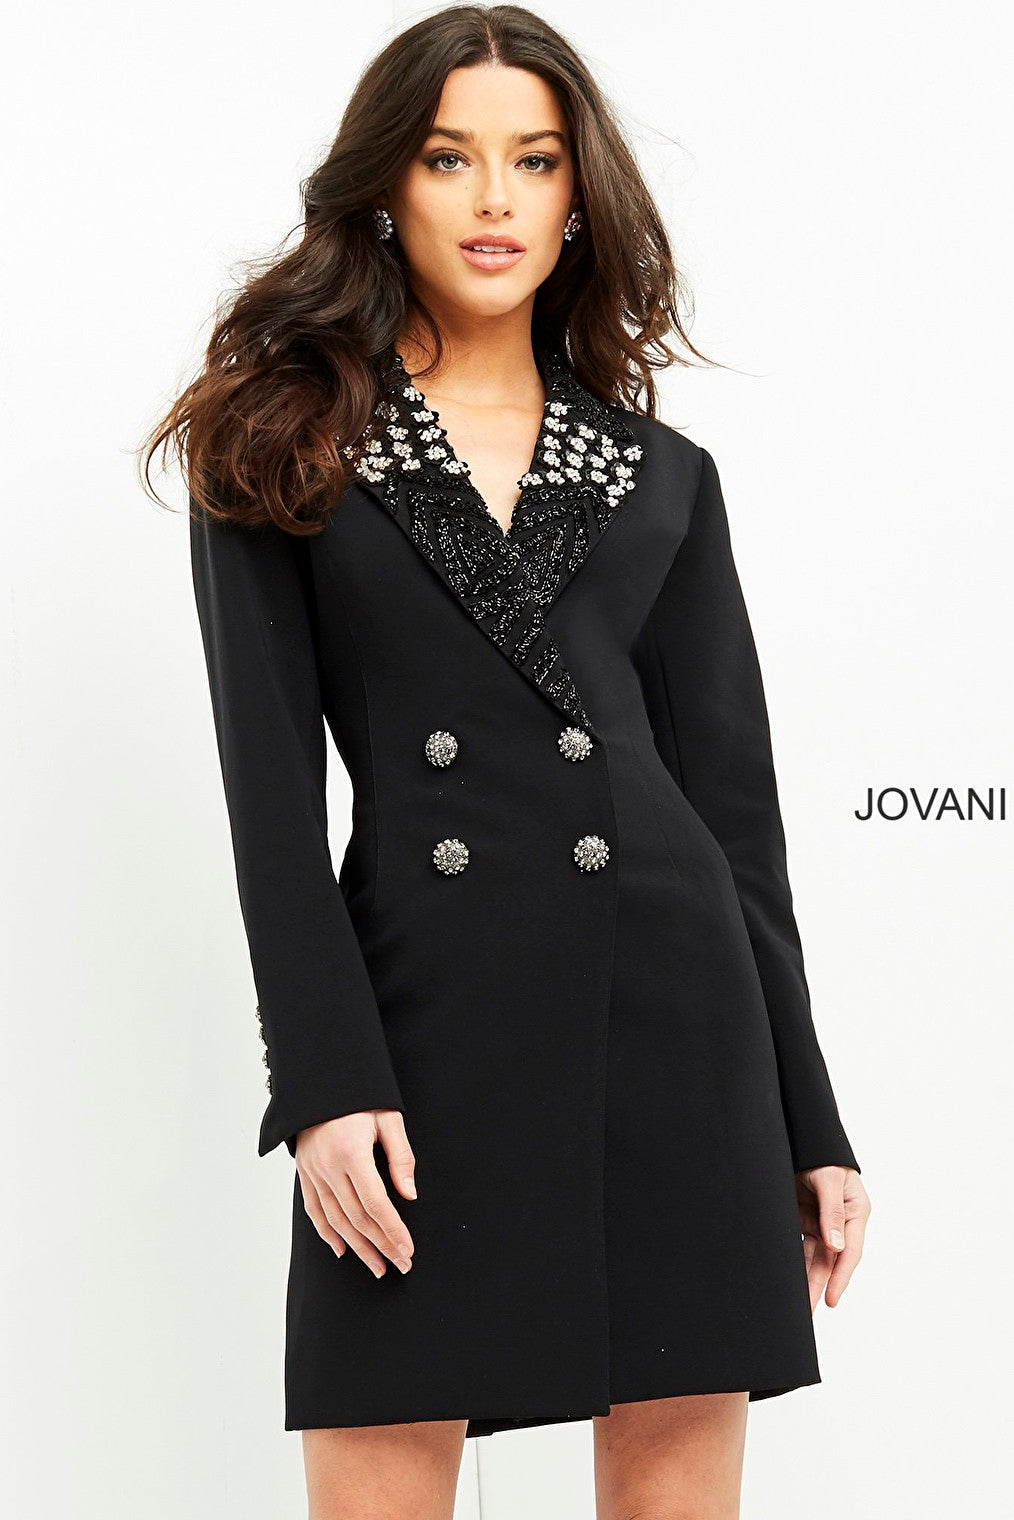 Black ready to wear blazer dress Jovani M03416